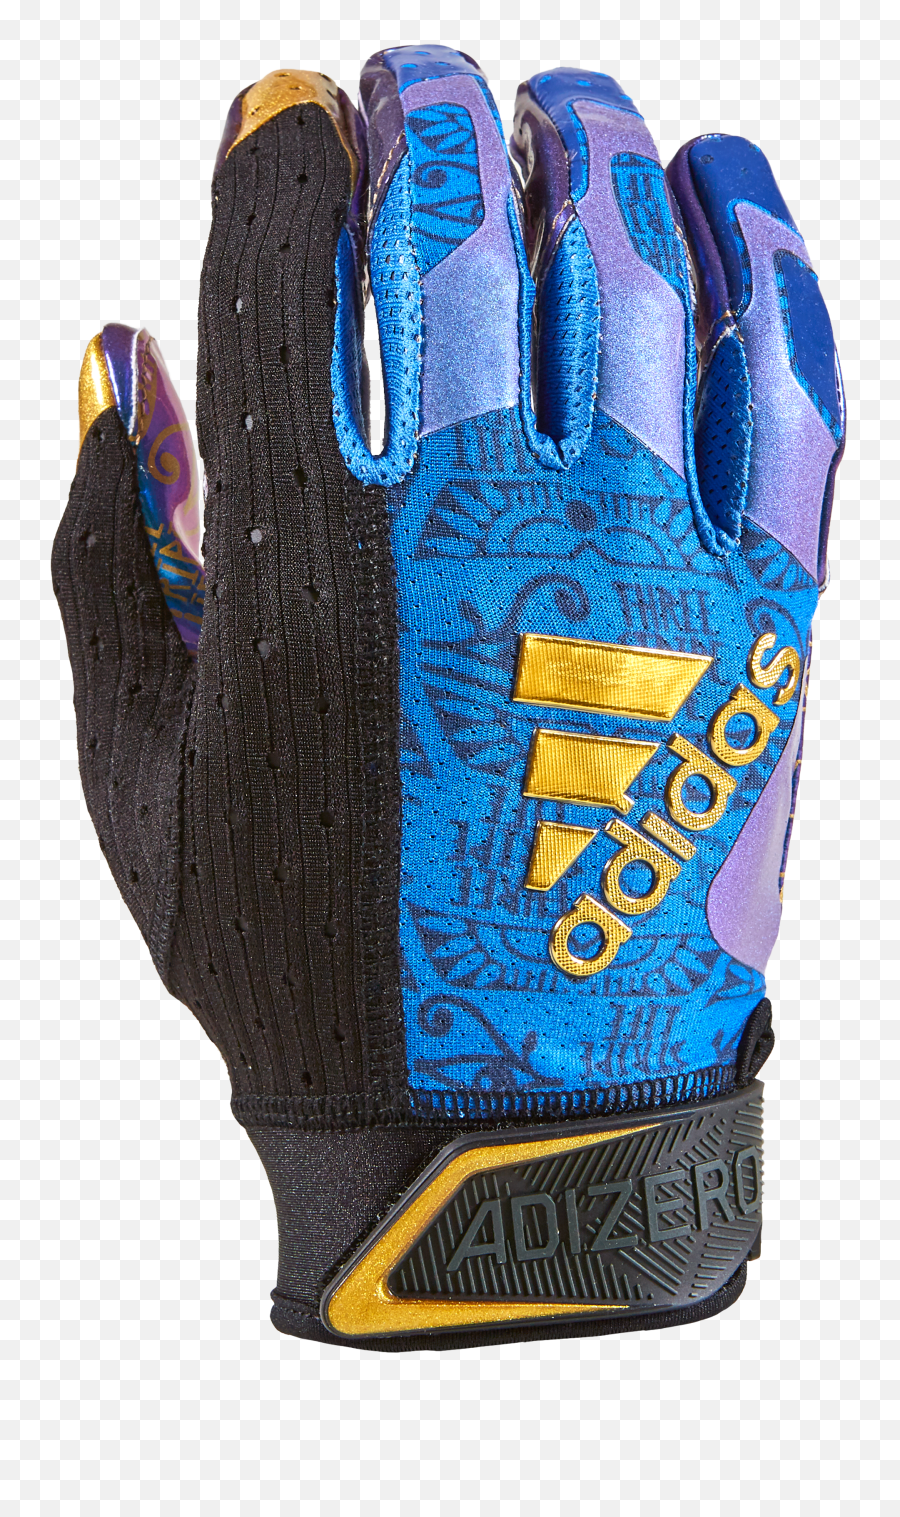 Blue Receiver Glovesnew Daily Offerstenderfreshicecreamscom - Safety Glove Emoji,Adidas Emoji Receiver Gloves